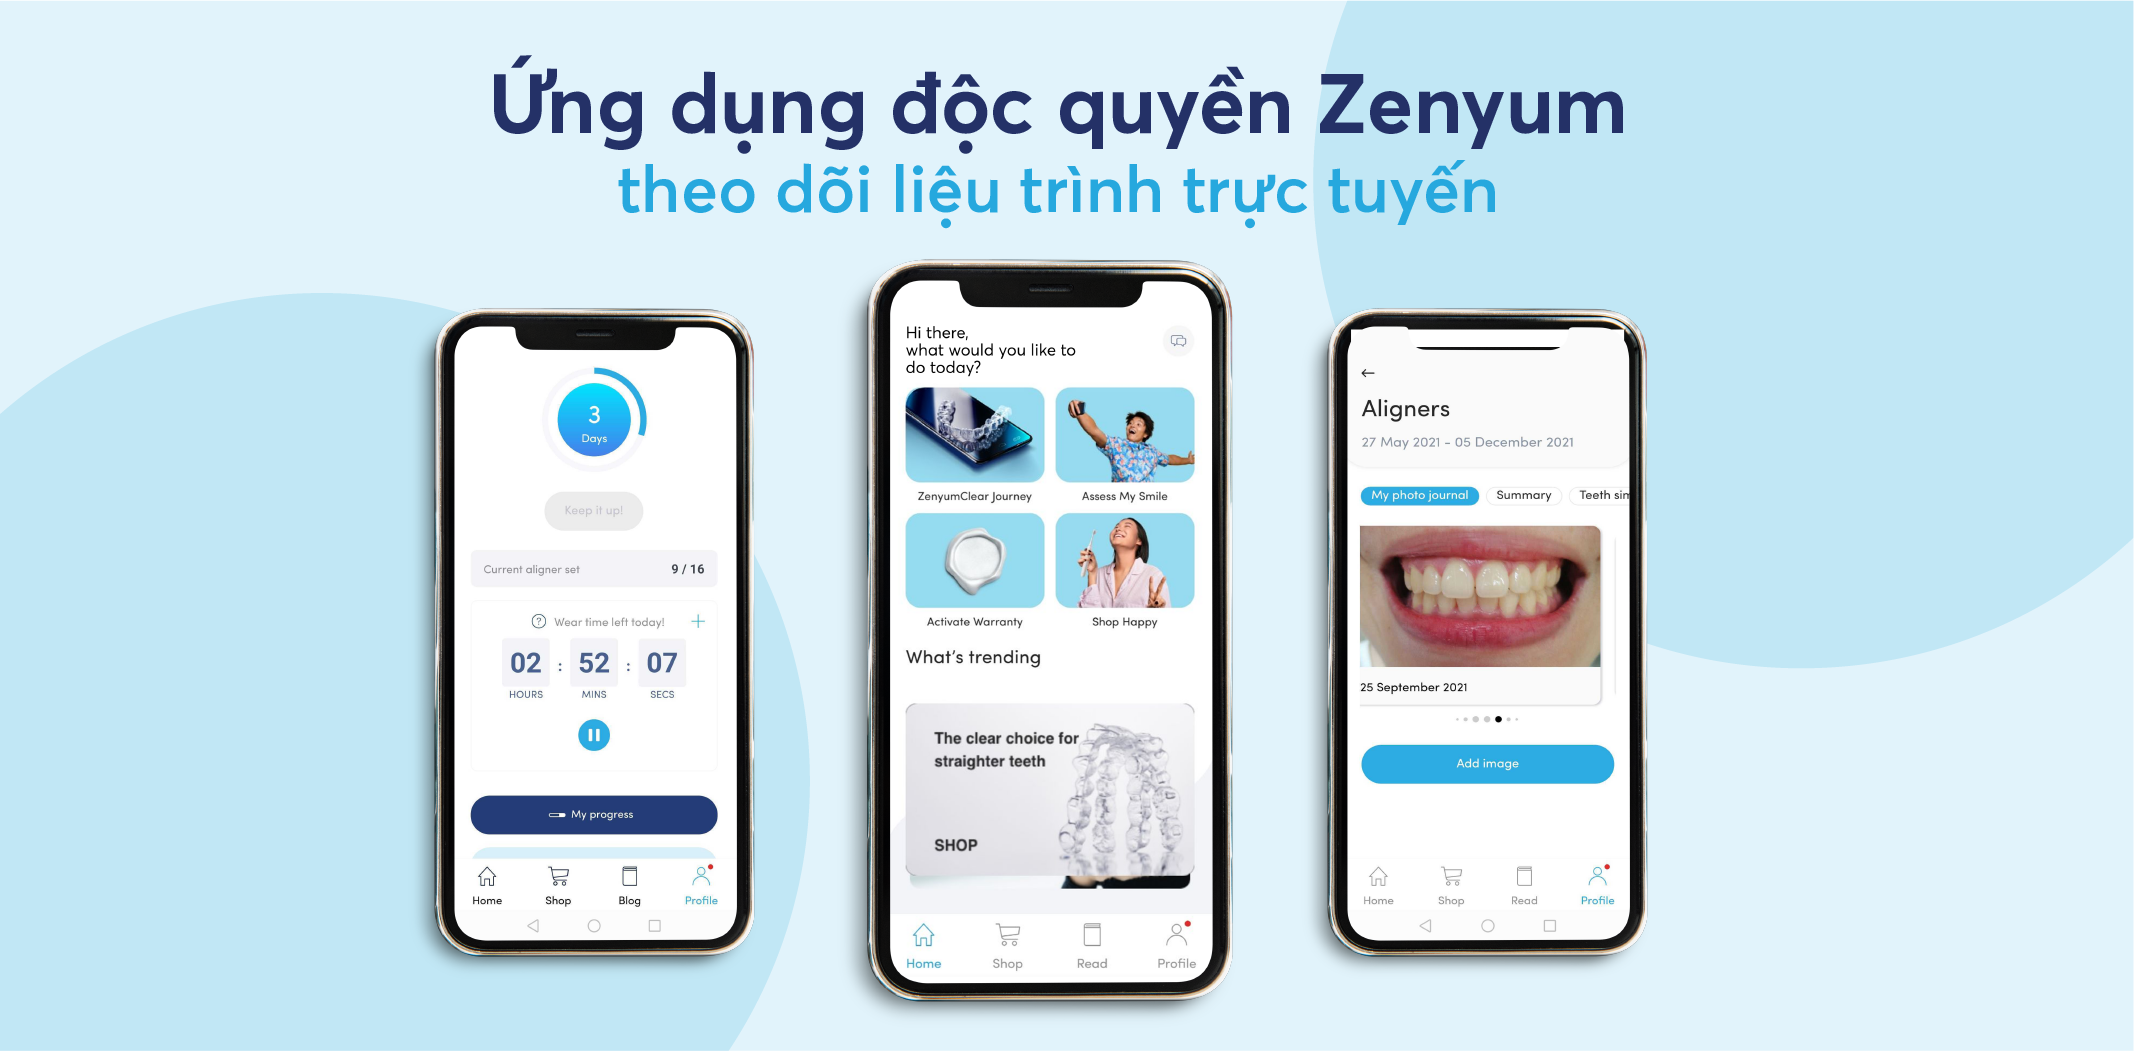 Toàn bộ liệu trình niềng răng với Zenyum sẽ được theo dõi qua ứng dụng độc quyền.